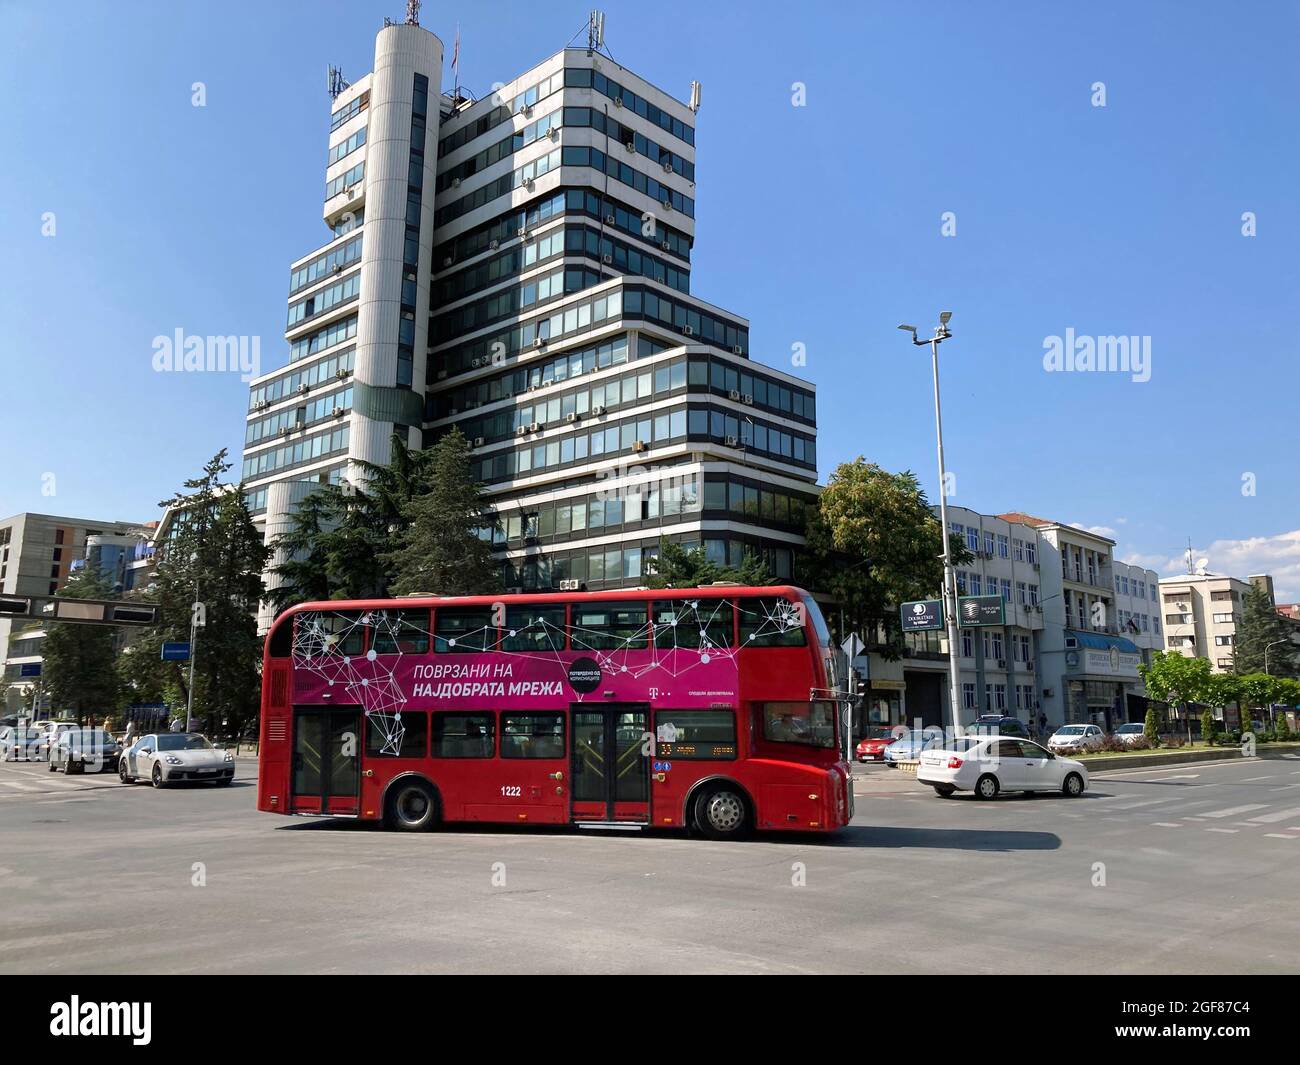 Macedonia, Skopje - August 20, 2021: red double-decker bus rides street in Skopje Stock Photo